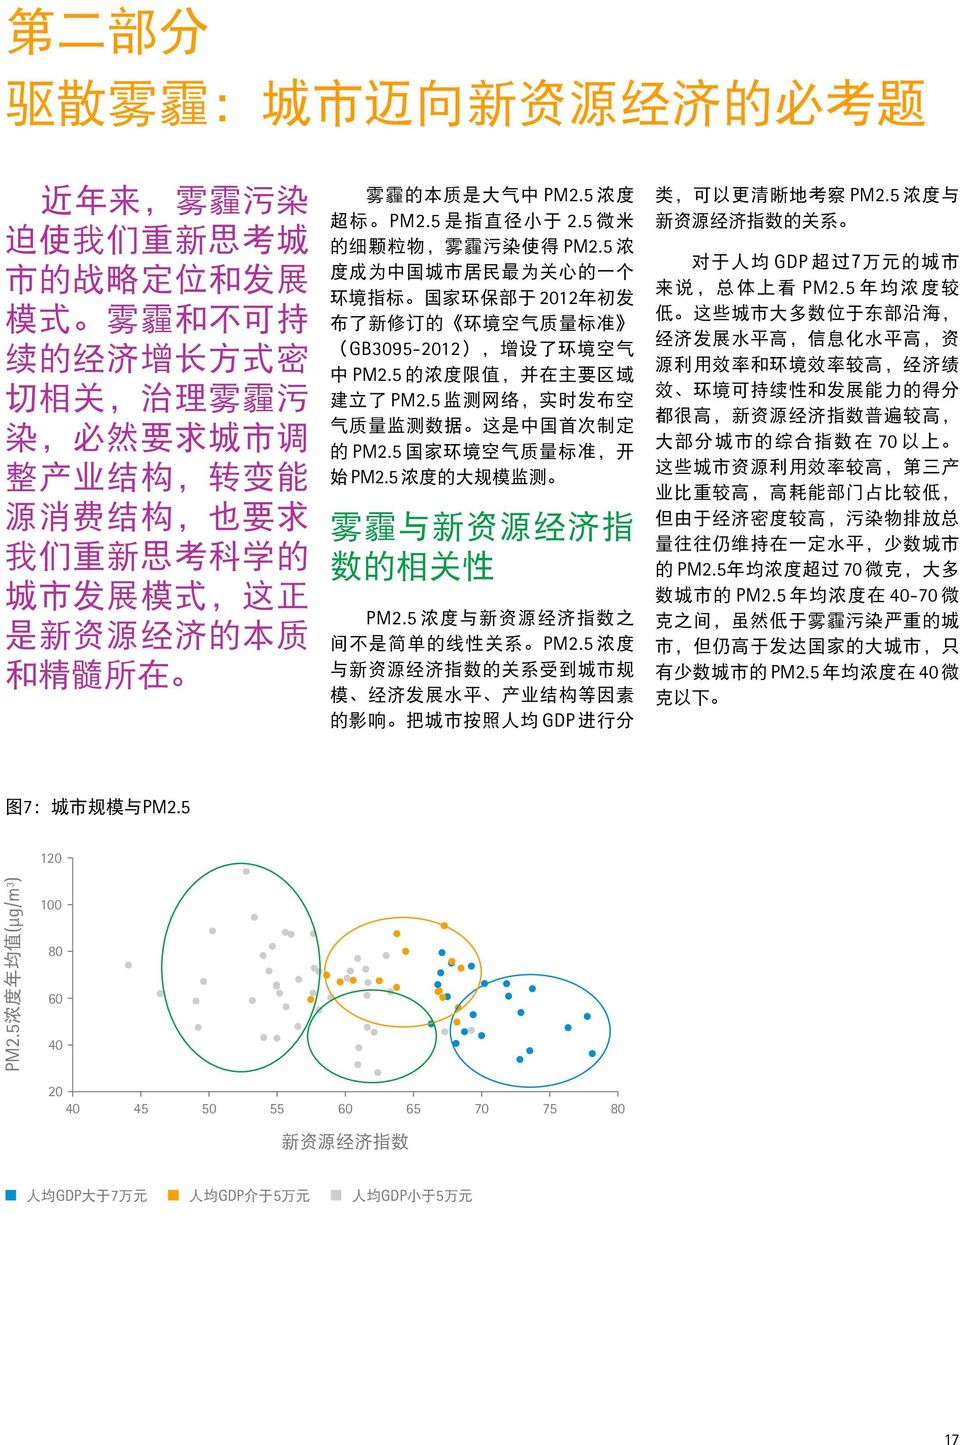 5 浓 度 成 为 中 国 城 市 居 民 最 为 关 心 的 一 个 环 境 指 标 国 家 环 保 部 于 2012 年 初 发 布 了 新 修 订 的 环 境 空 气 质 量 标 准 (GB3095-2012), 增 设 了 环 境 空 气 中 PM2.5 的 浓 度 限 值, 并 在 主 要 区 域 建 立 了 PM2.